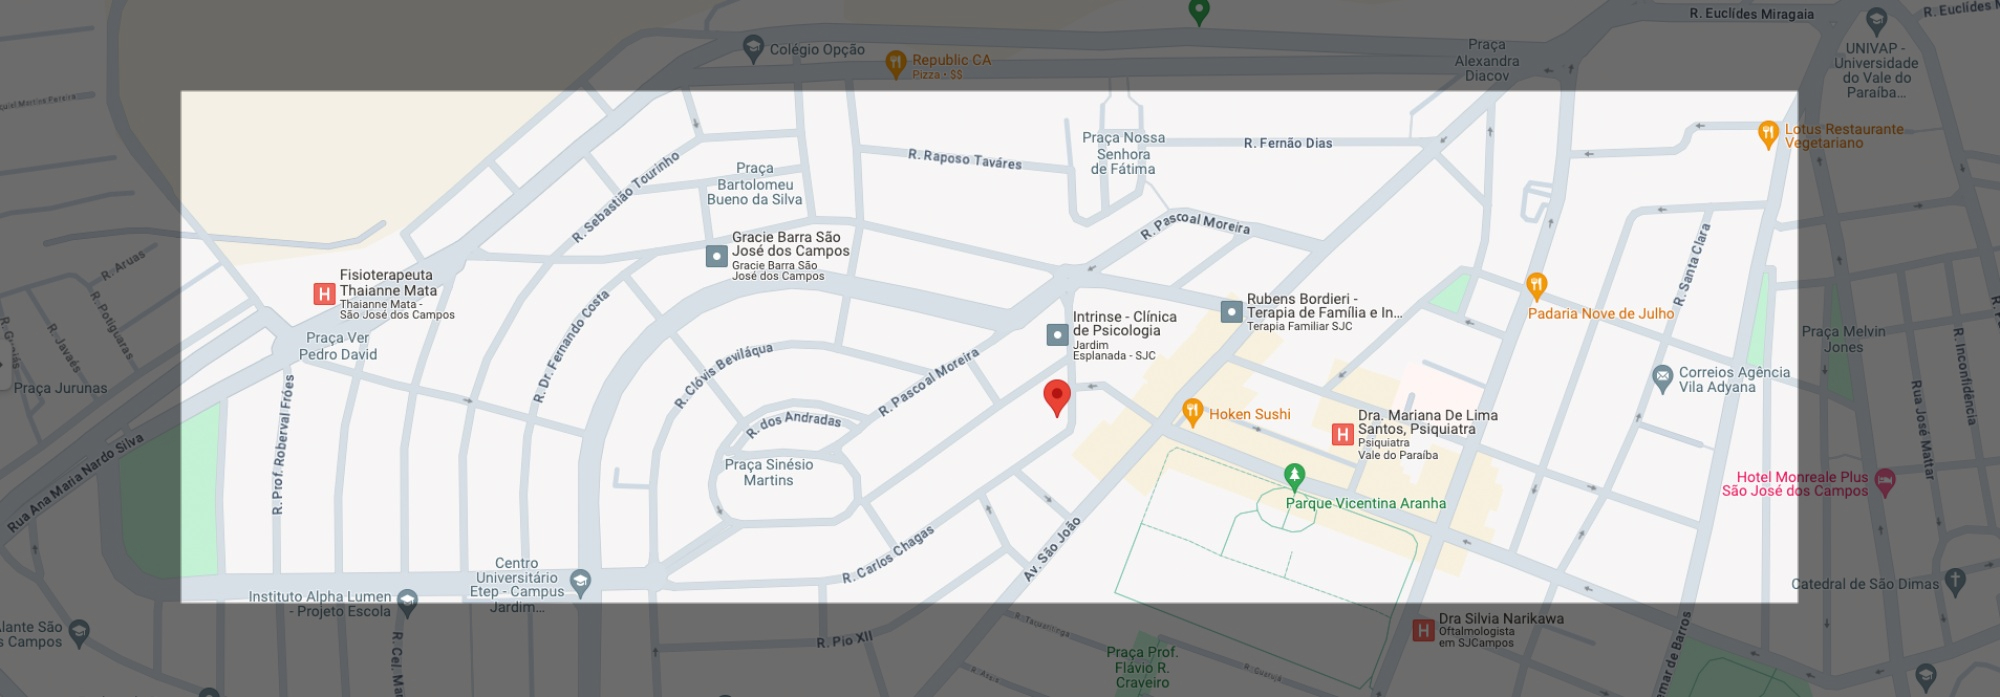 Google maps endereço Sentran